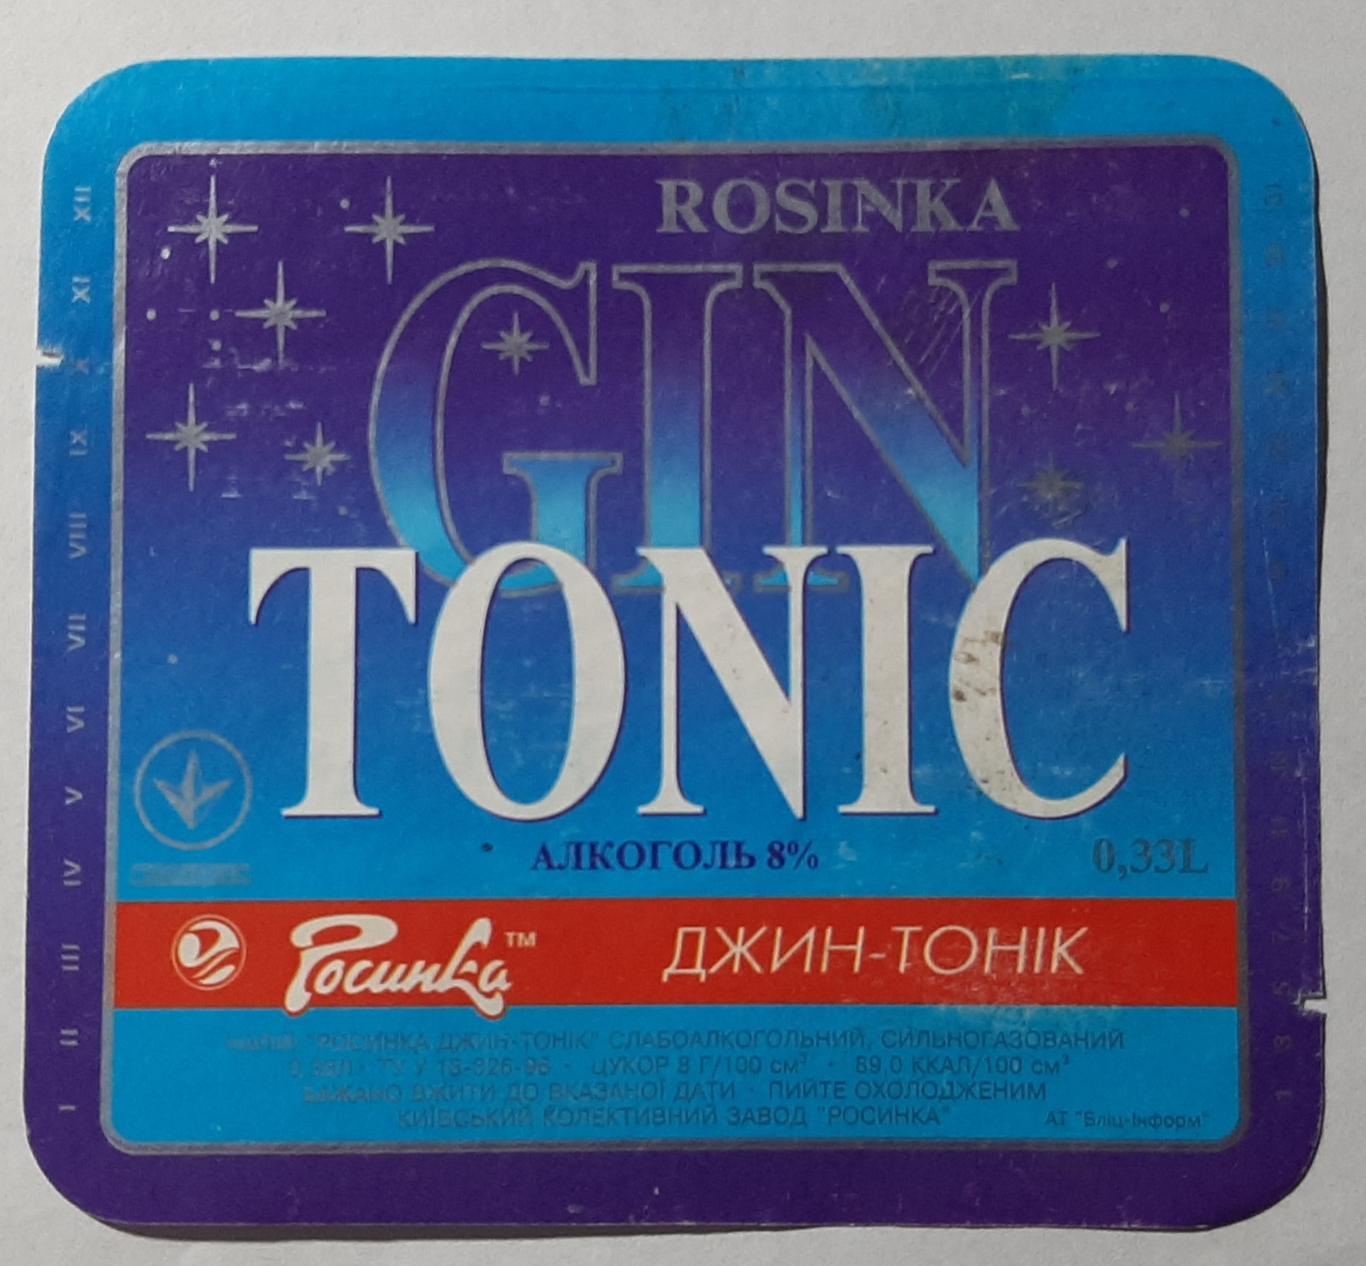 Етикетка слабоалкогольний напій Джин тонік (Росинка)